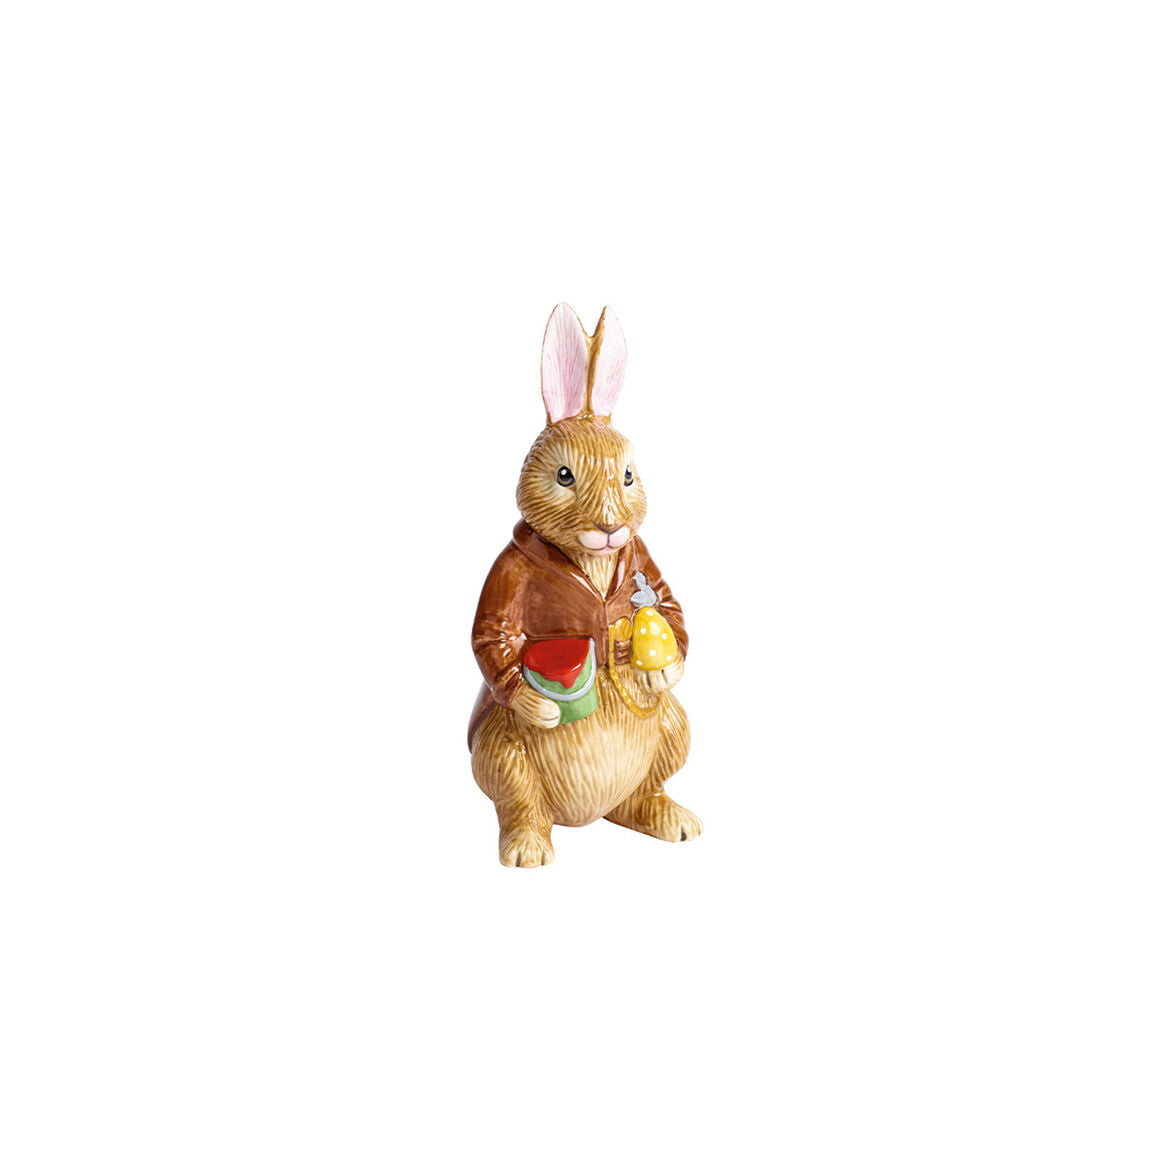 VILLEROY & BOCH - Bunny Tales Nonno Hans Figura Coniglio 14,5cm Decorazione Pasquale